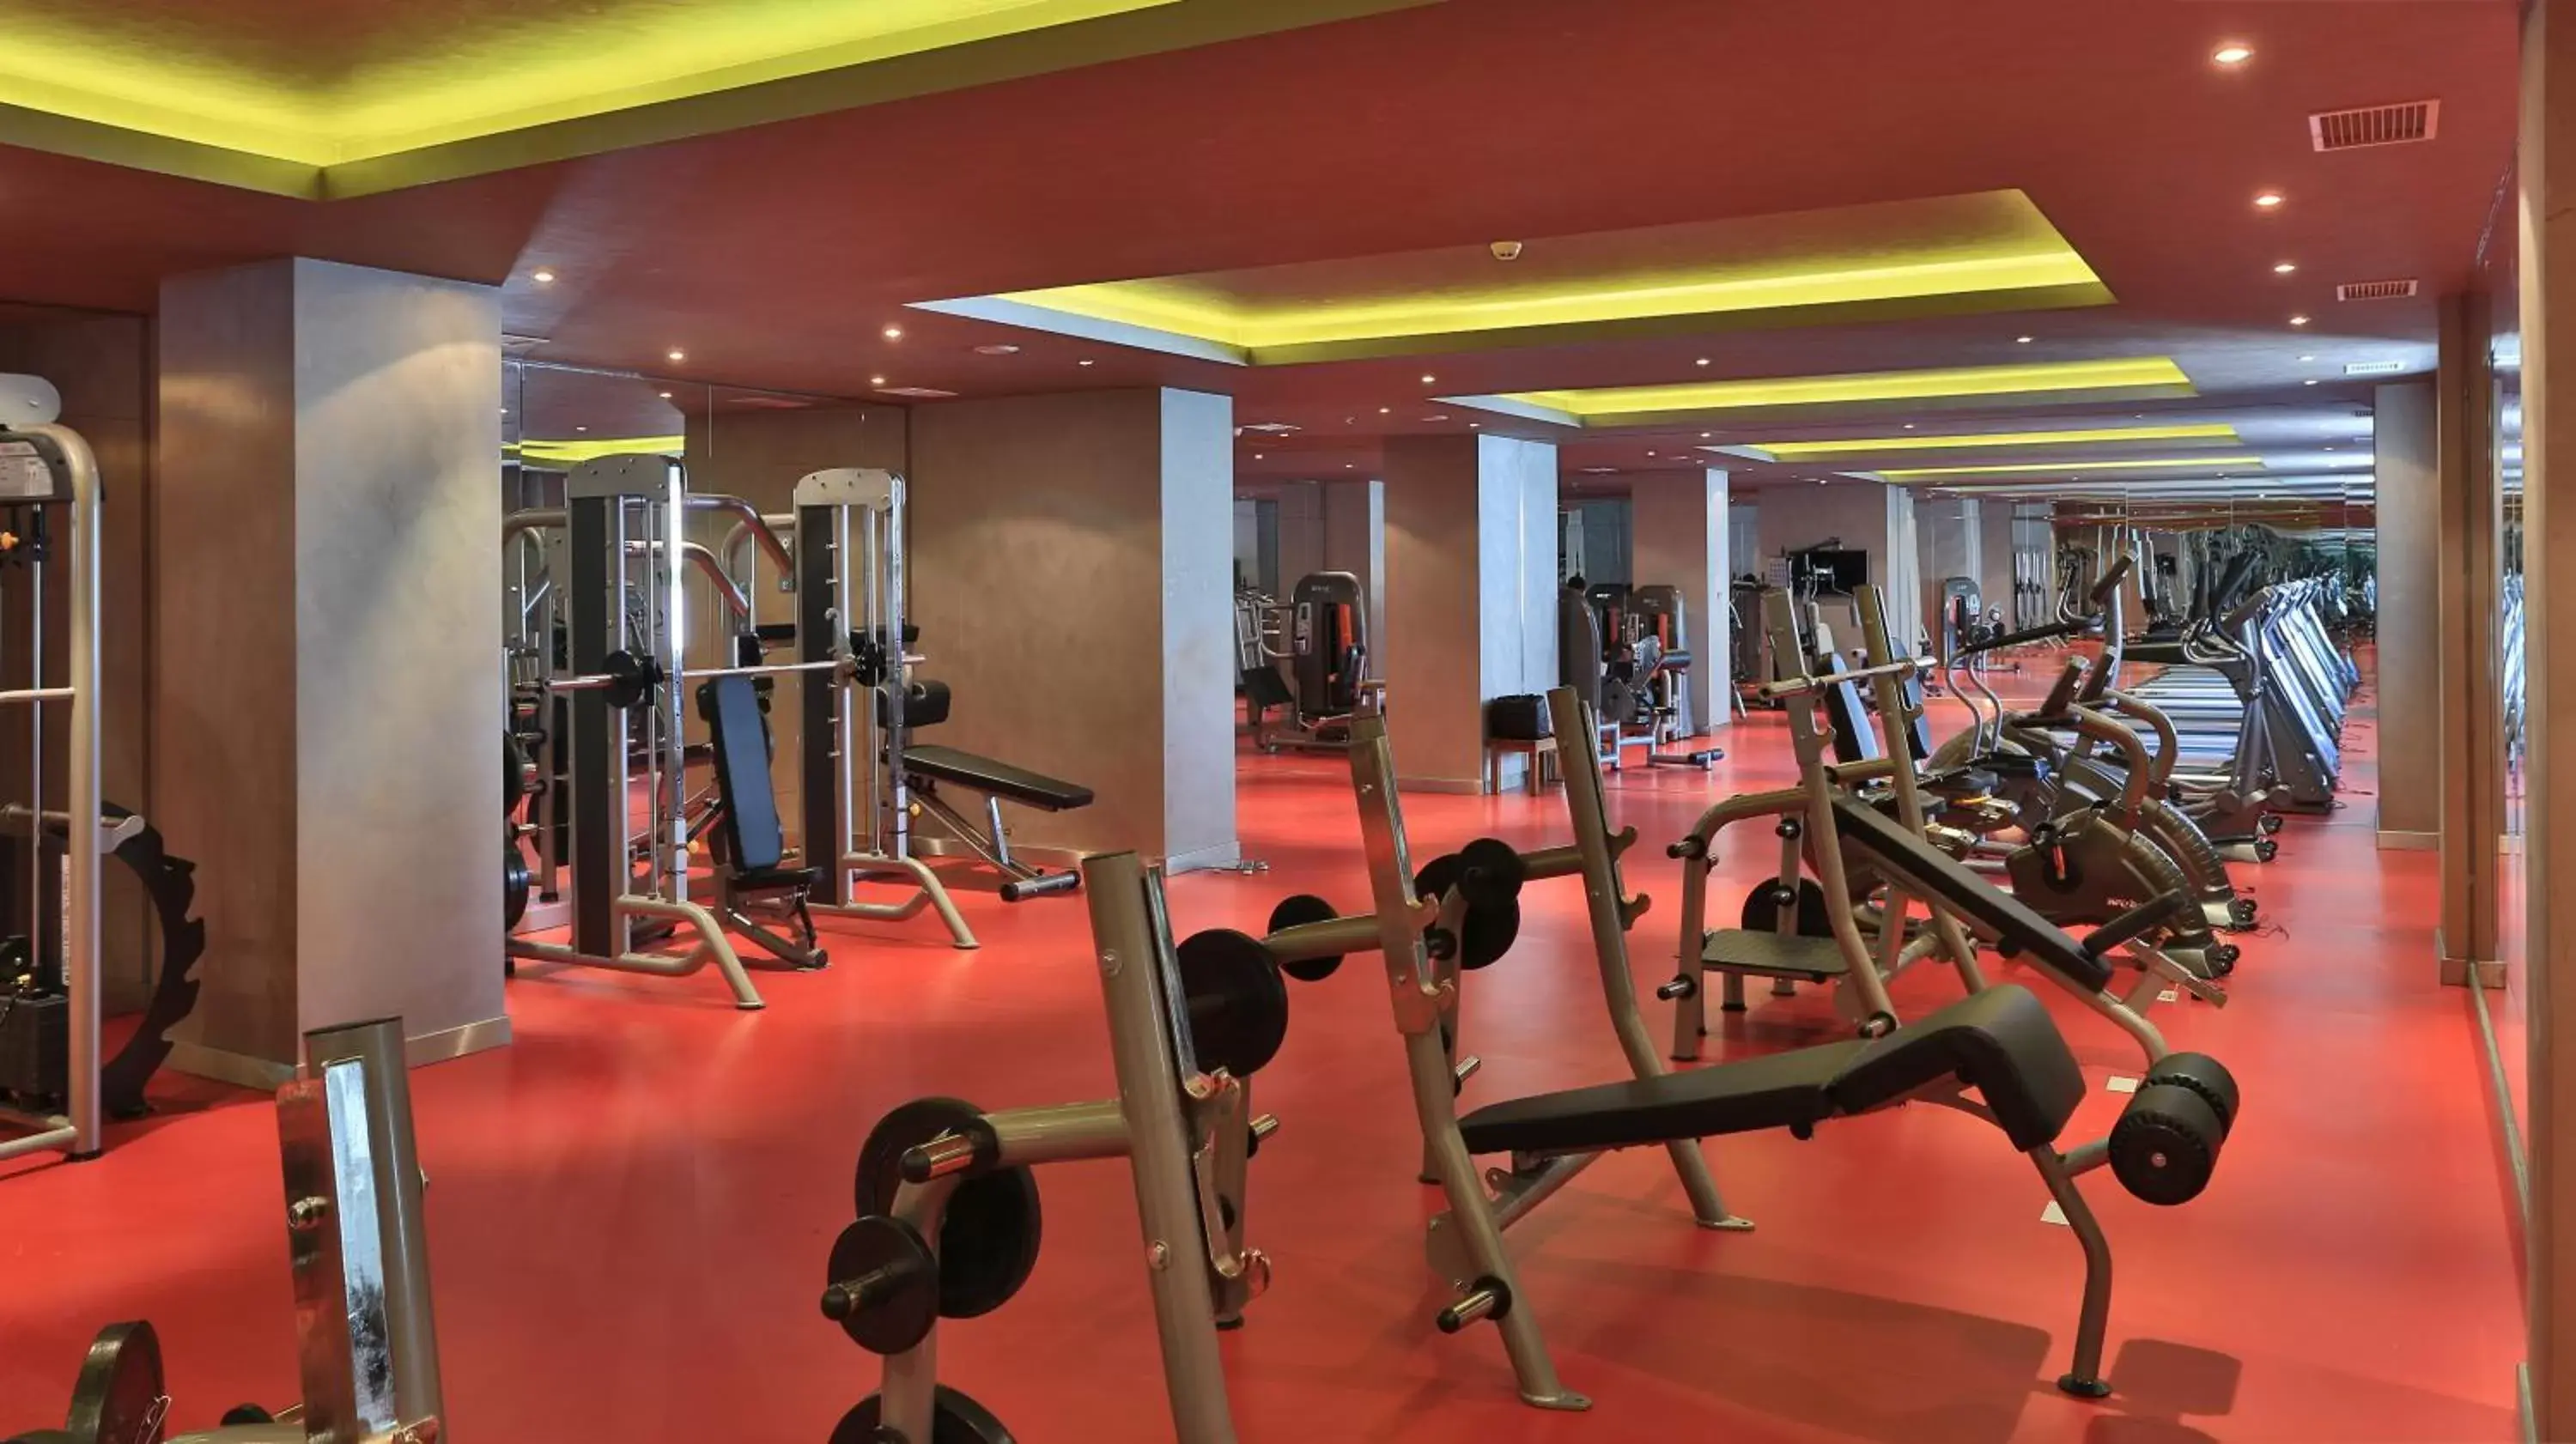 Fitness centre/facilities, Fitness Center/Facilities in Borjomi Likani Health & Spa Centre